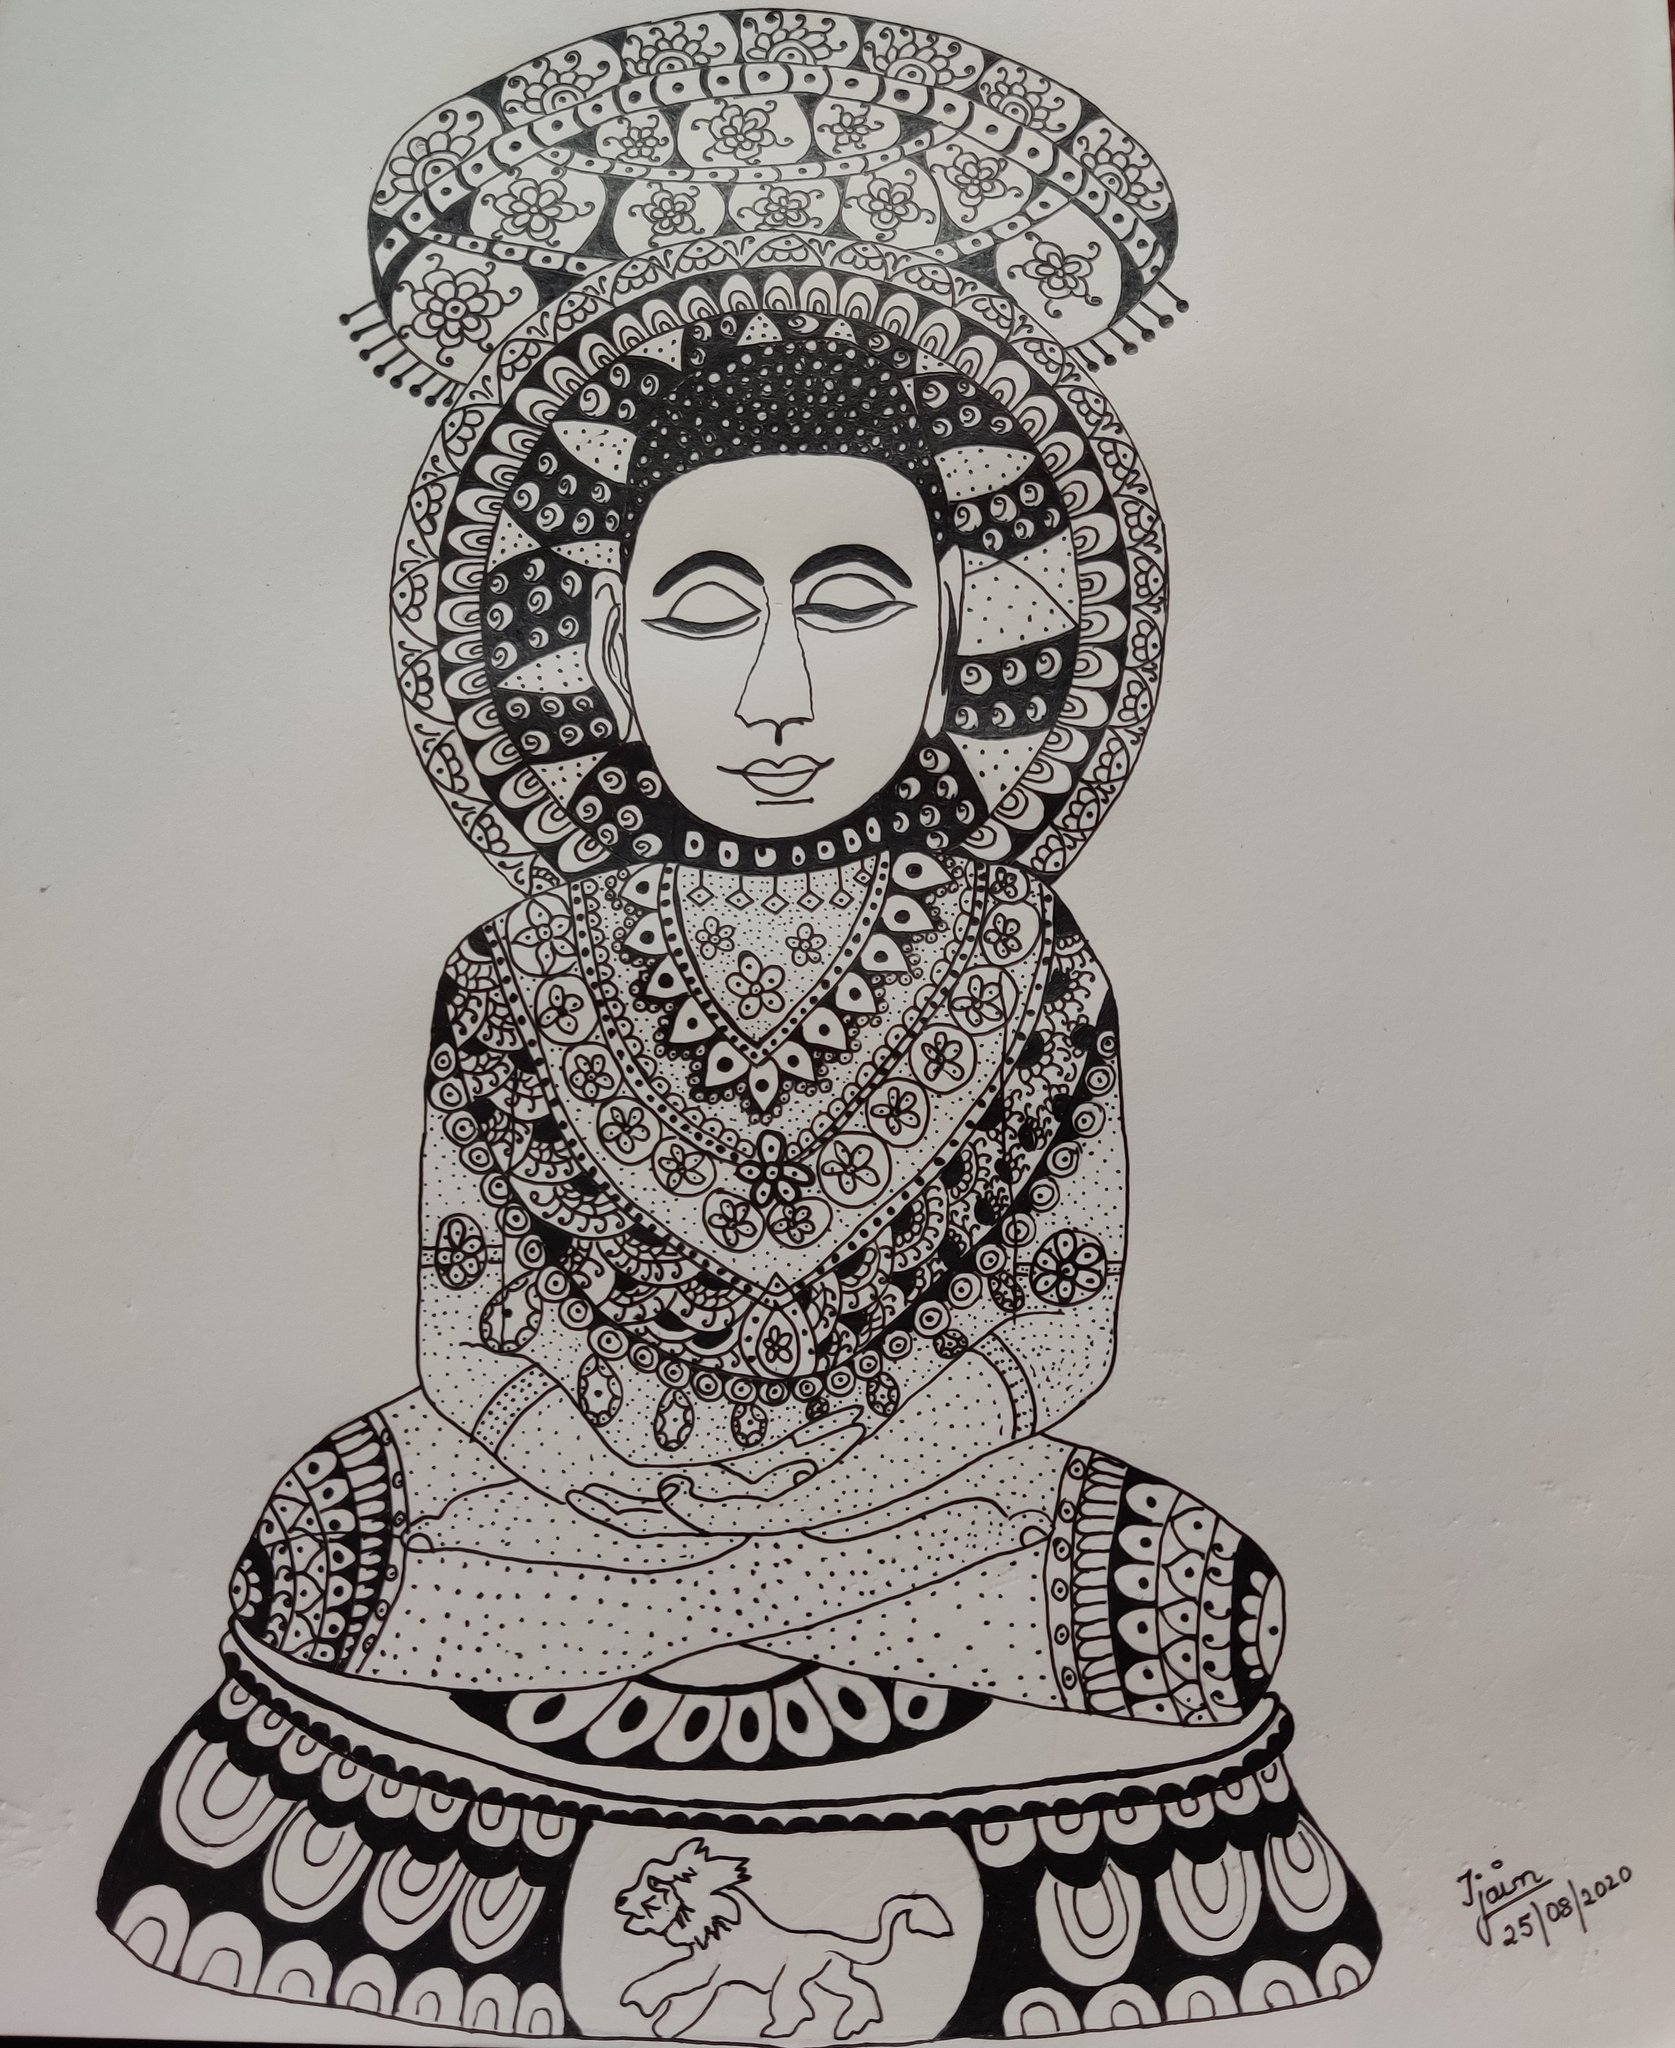 HOW TO DRAW LORD MAHAVIR DRAWING  MAHAVIR JAYANTI SPECIAL DRAWINGMAHAVIR  SWAMI BHAGWAN DRAWING  Drawings Painting Draw